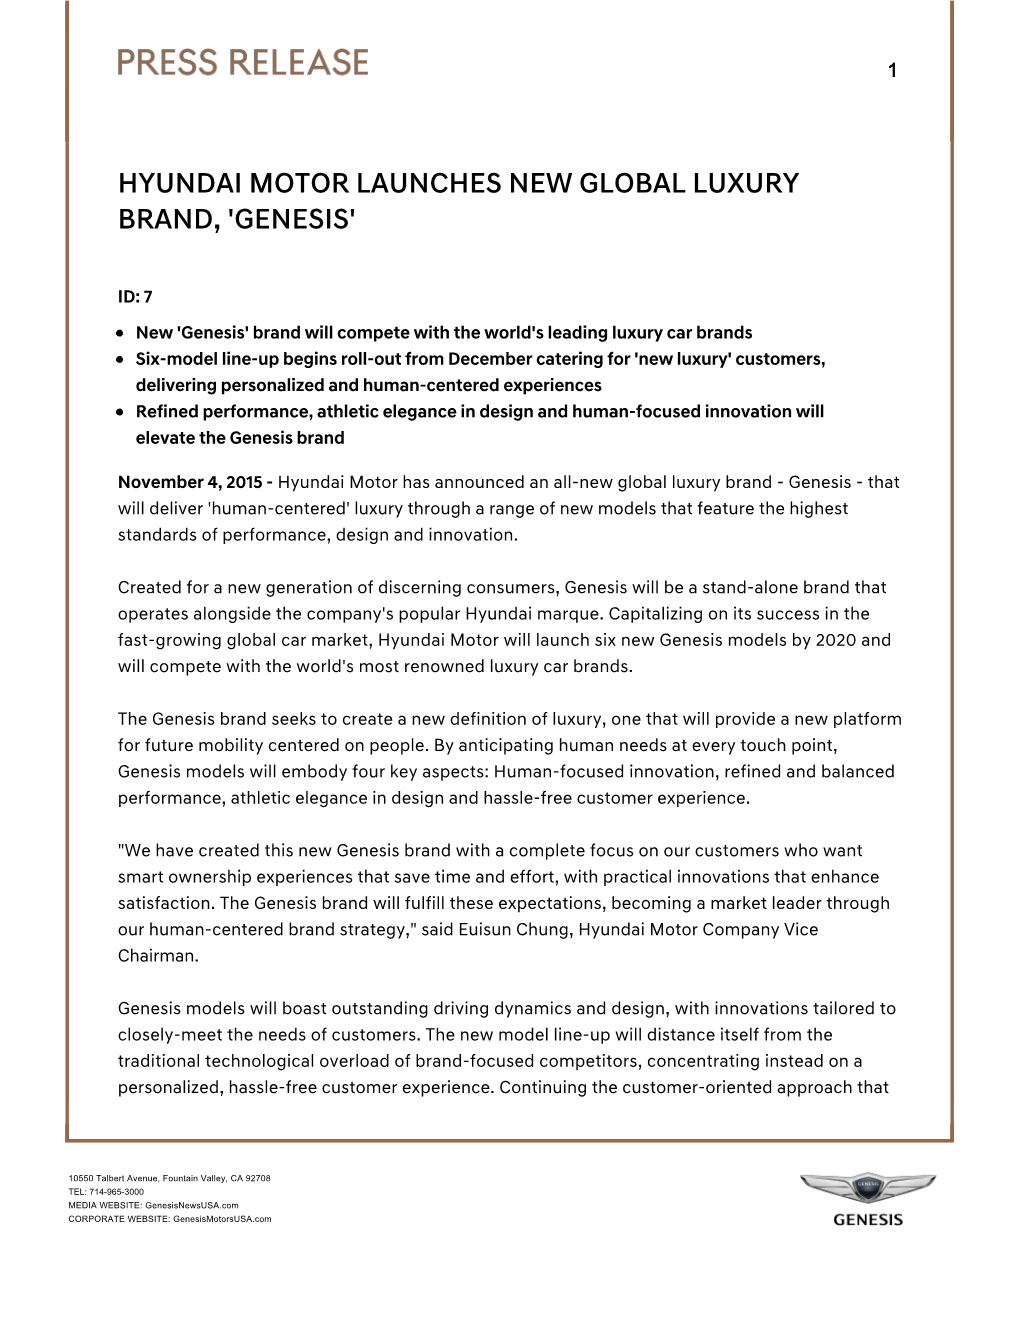 Hyundai Motor Launches New Global Luxury Brand, 'Genesis'